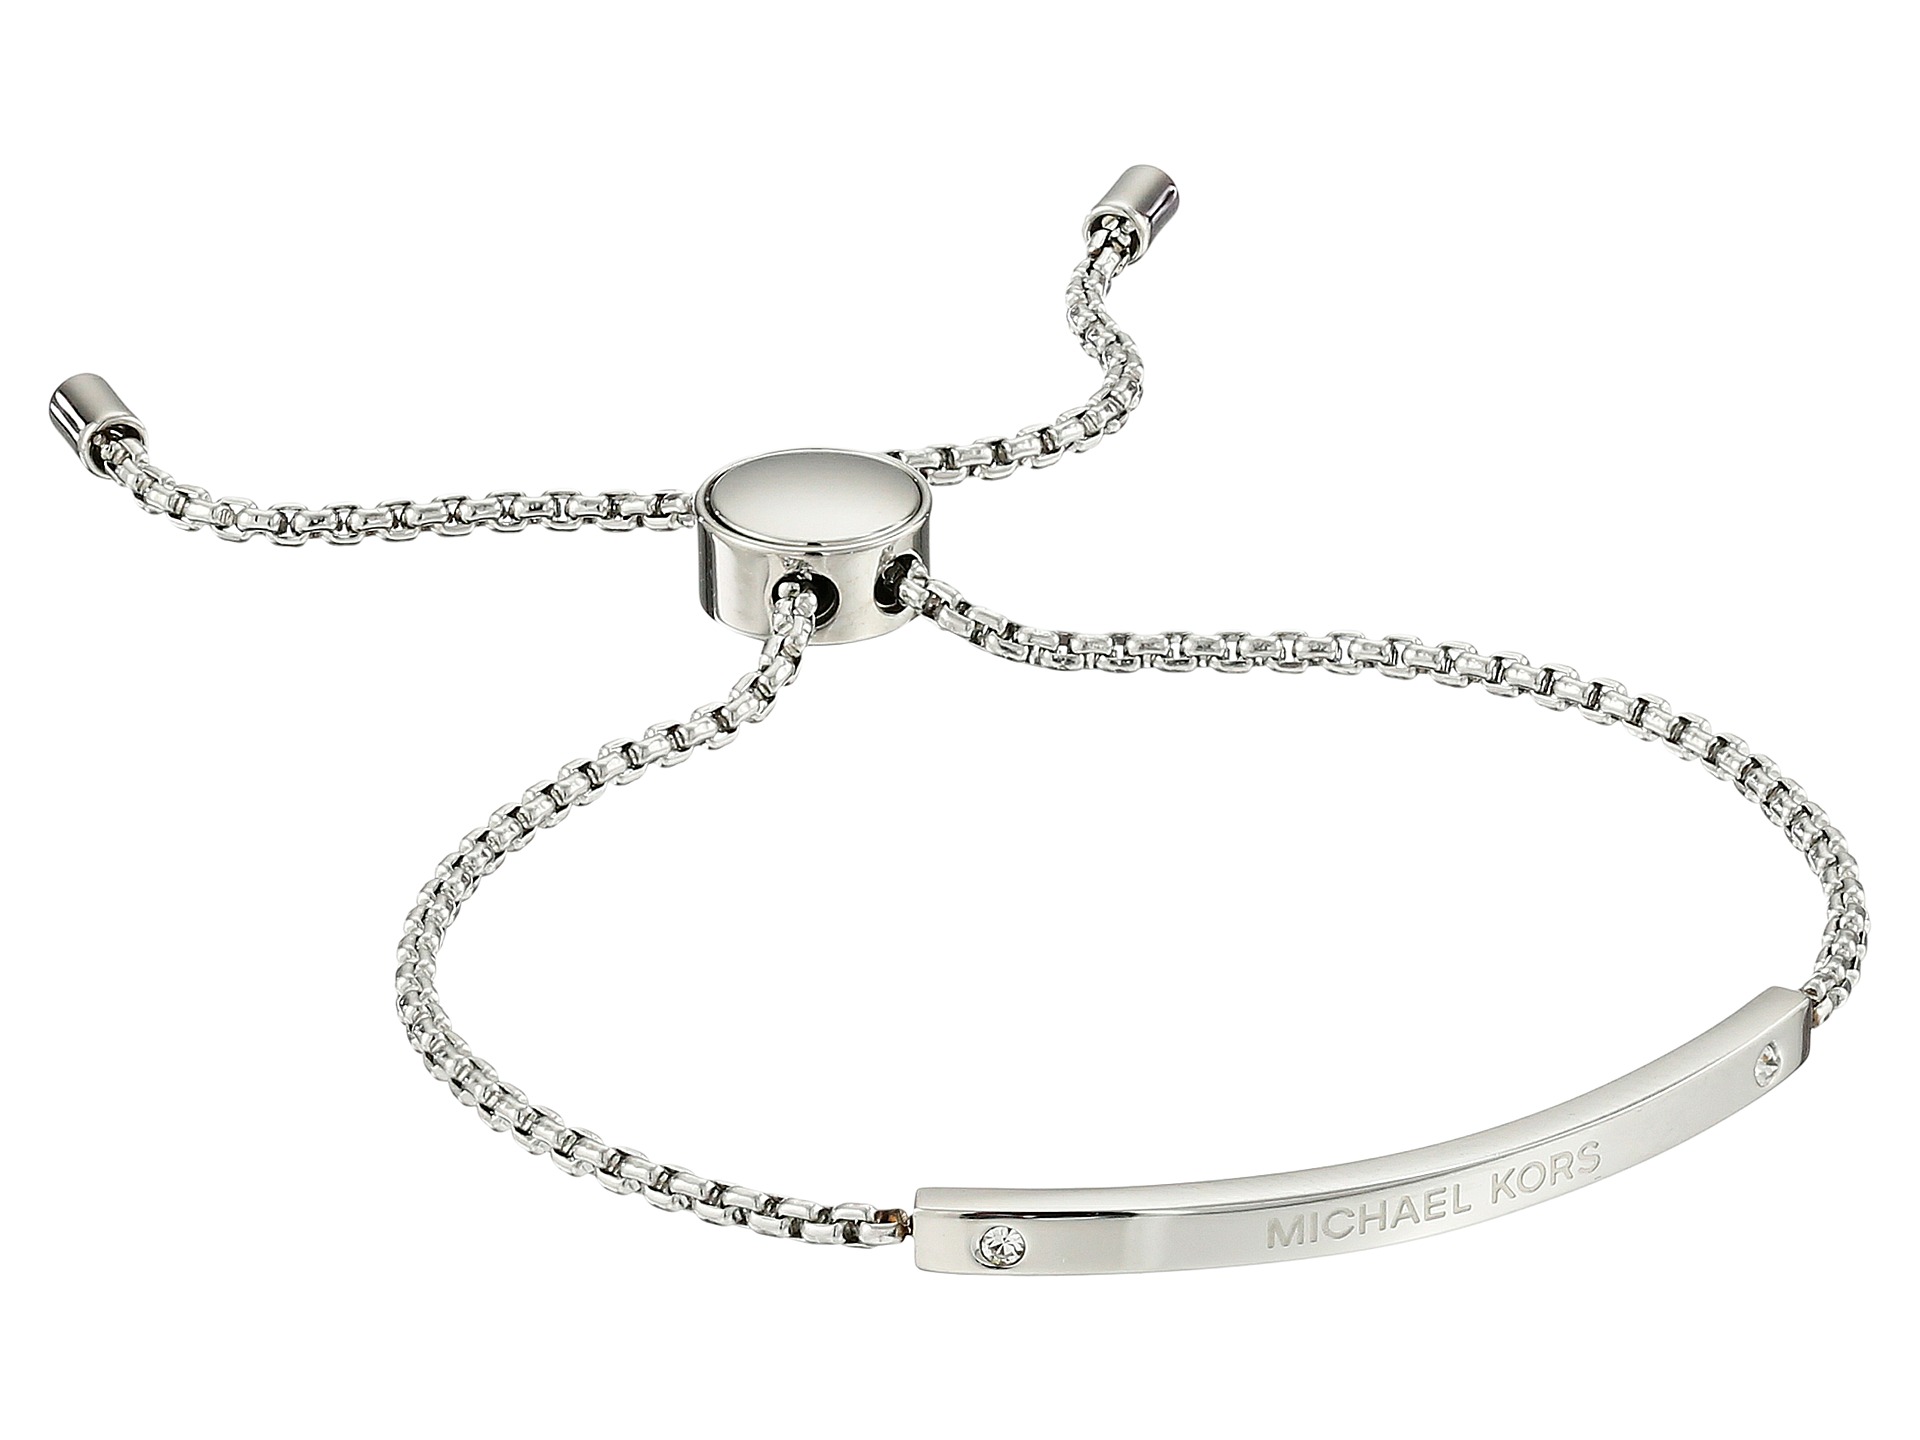 Michael Kors Logo Bracelet   Slider Bracelet Silver